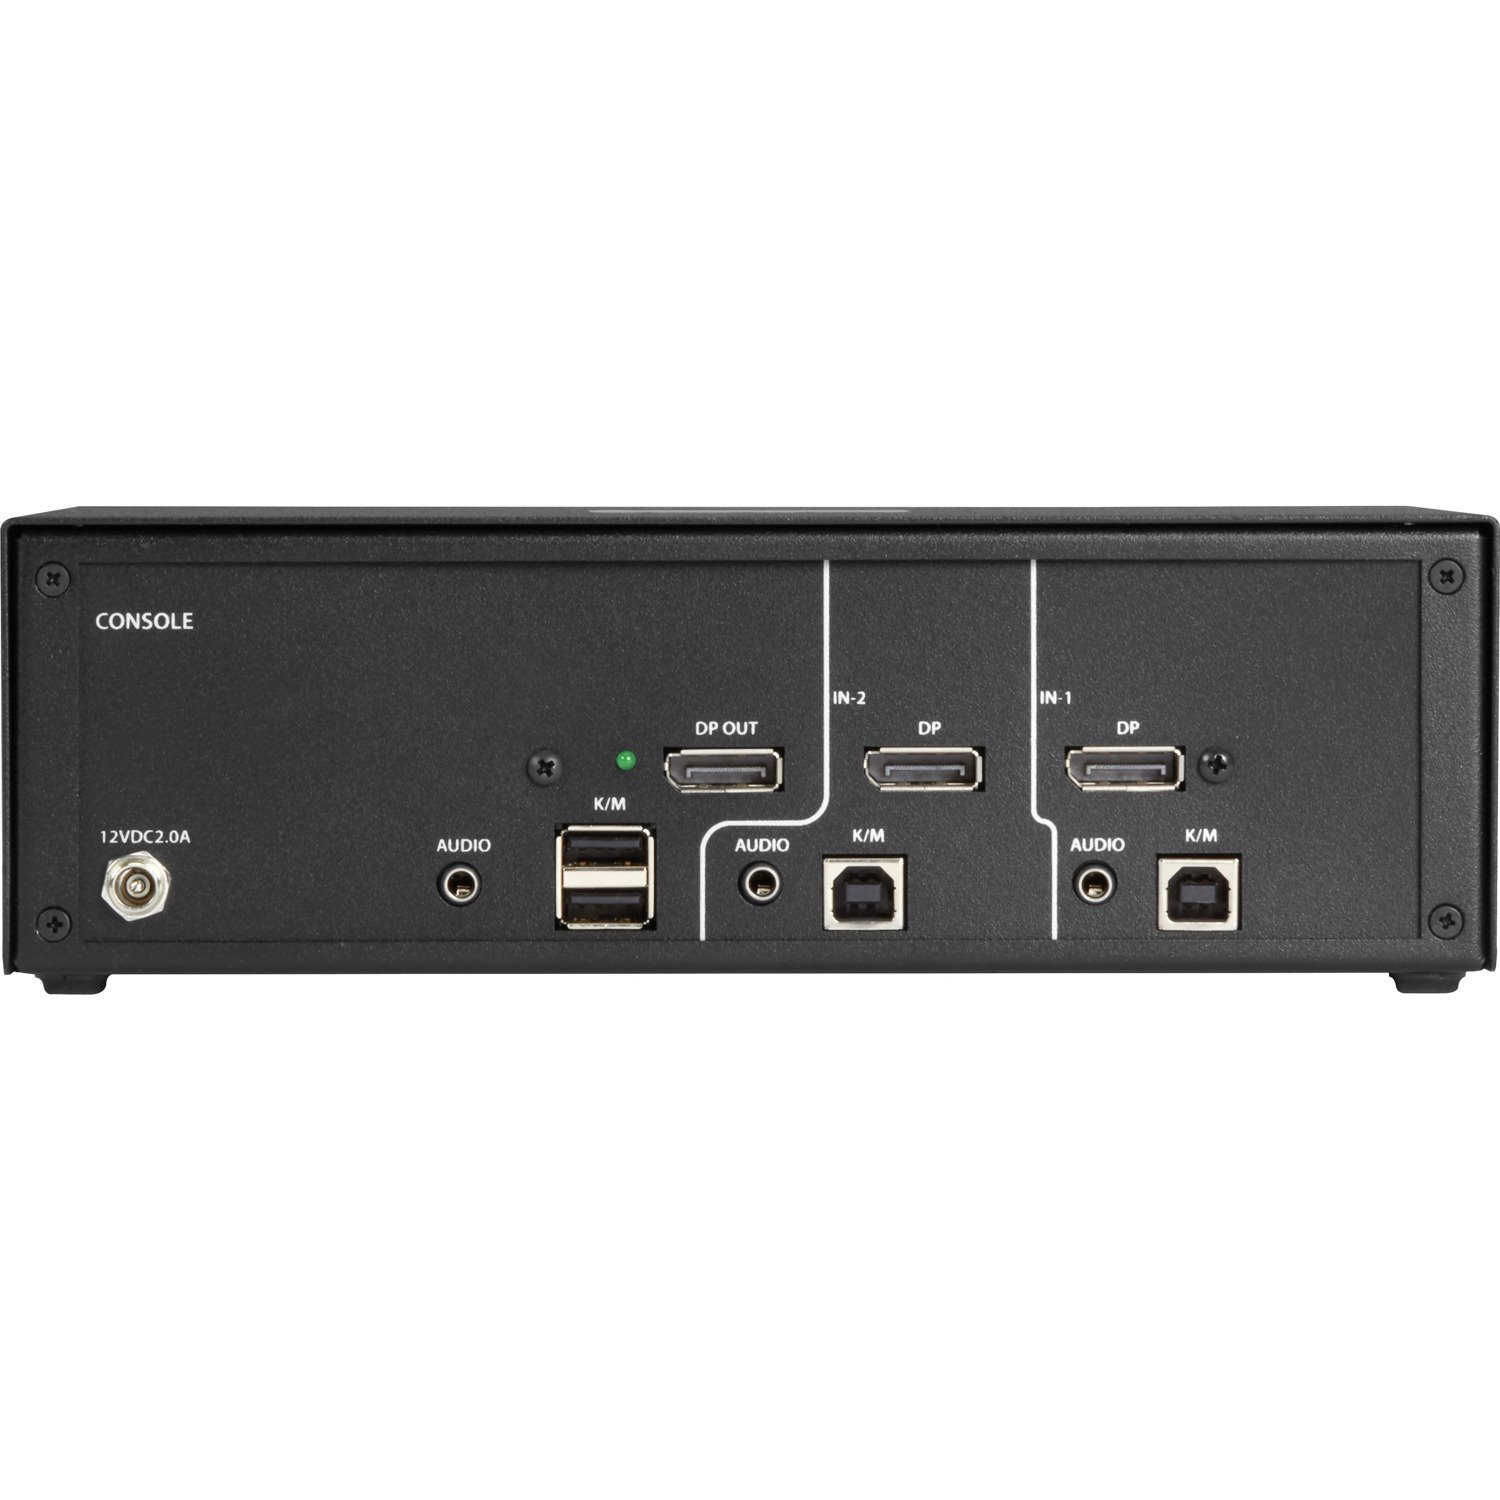 Black Box NIAP 3.0 Secure 2-Port Single-Head DisplayPort KVM Switch